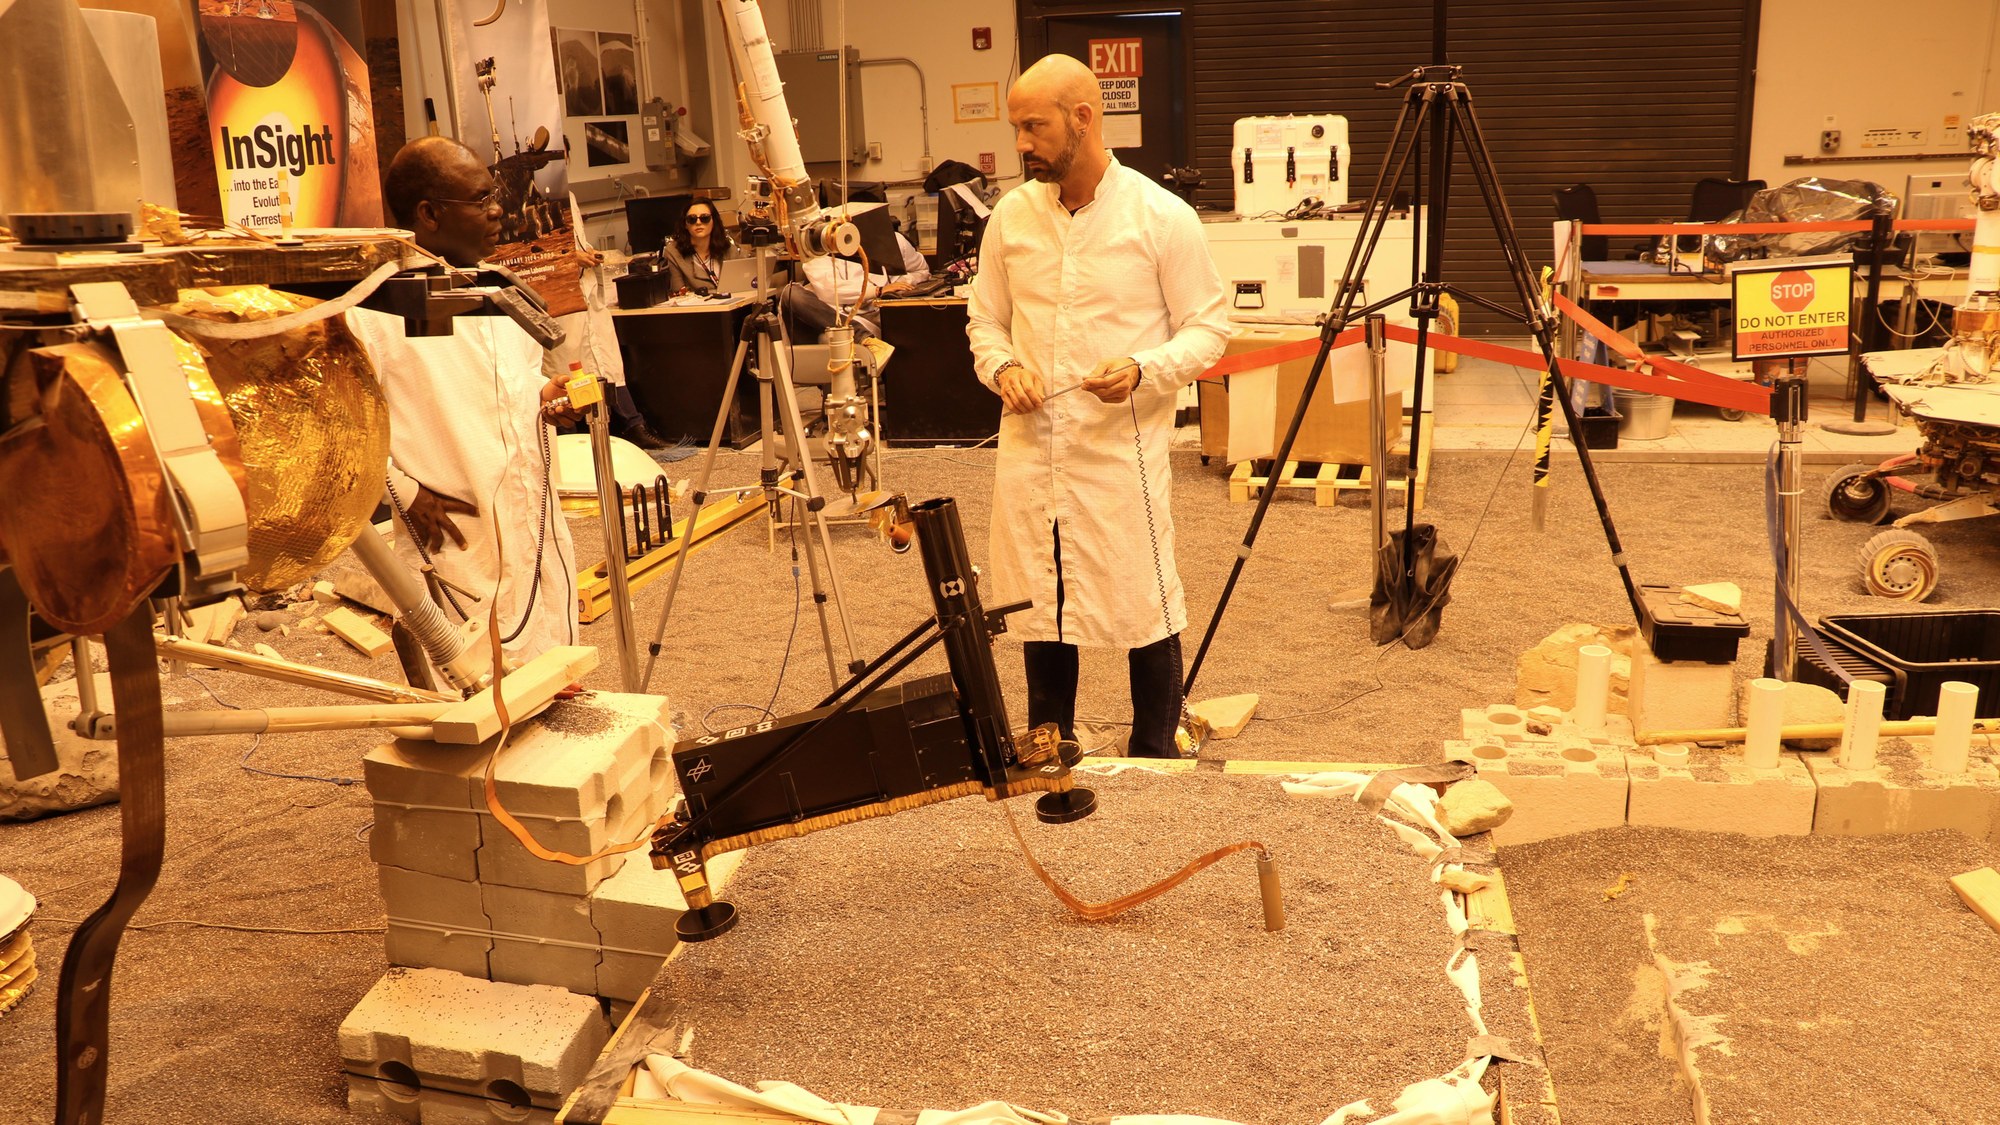 Mars ‘Mole’ - JPL engineers test heat probe strategies